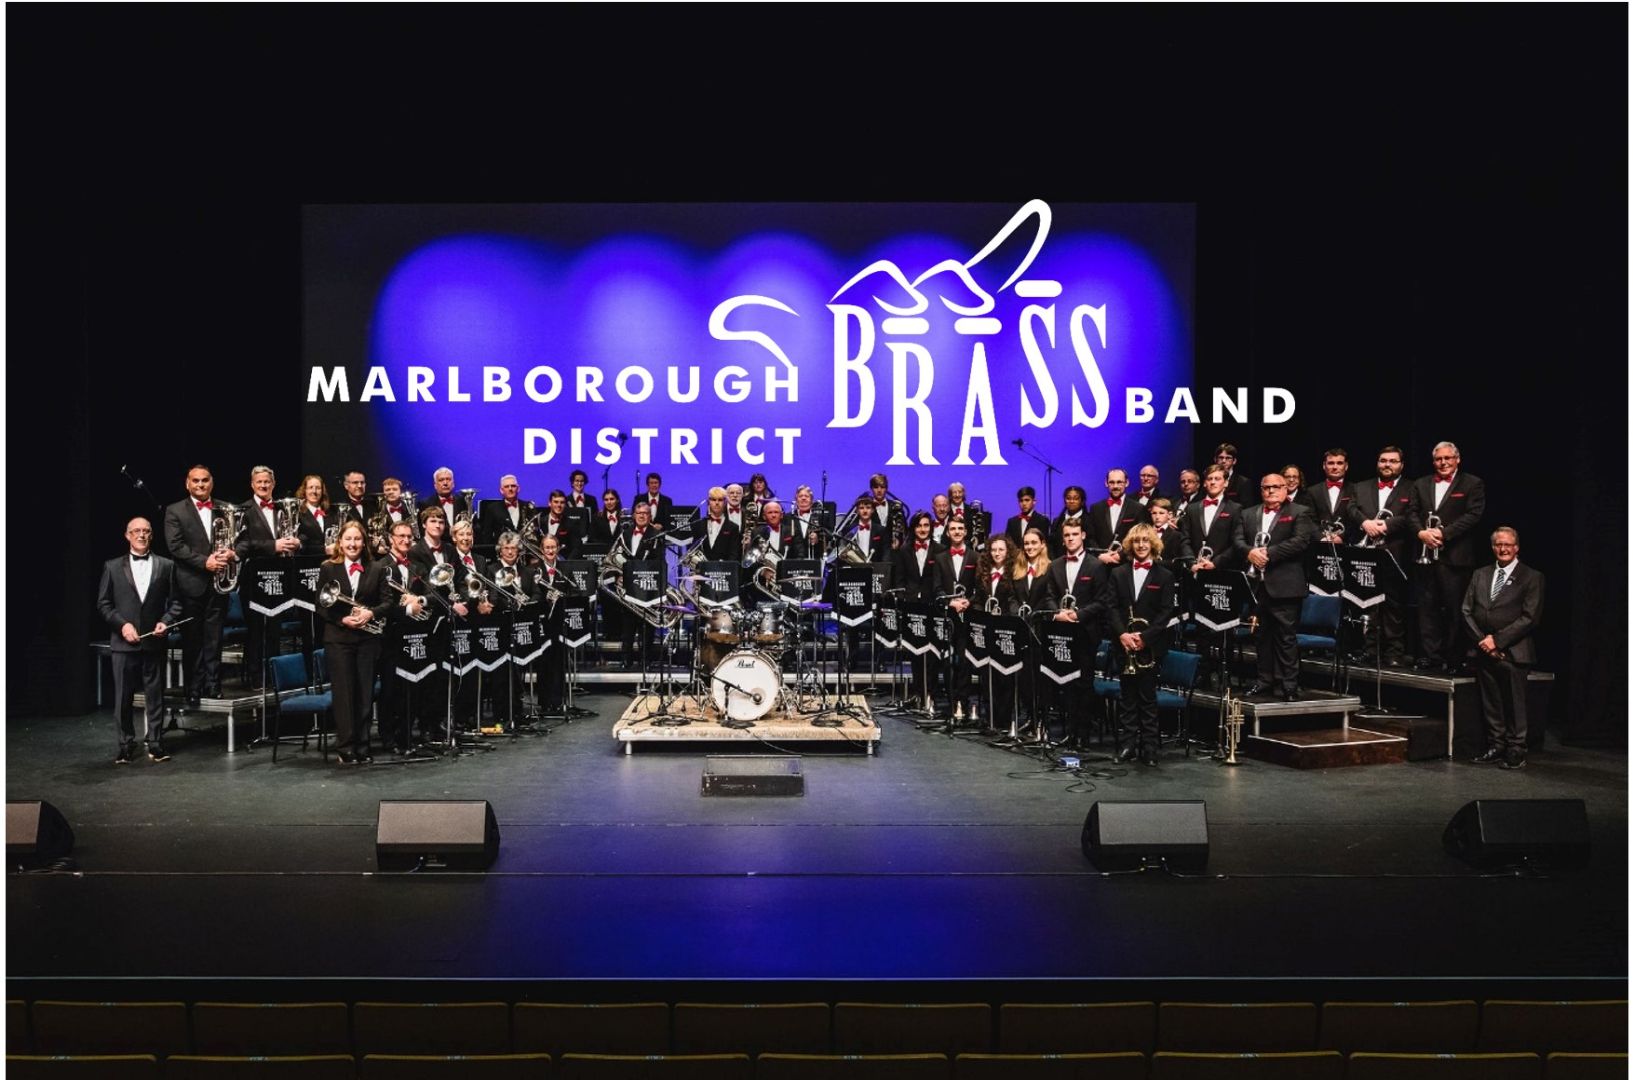 Marlborough District Brass Band